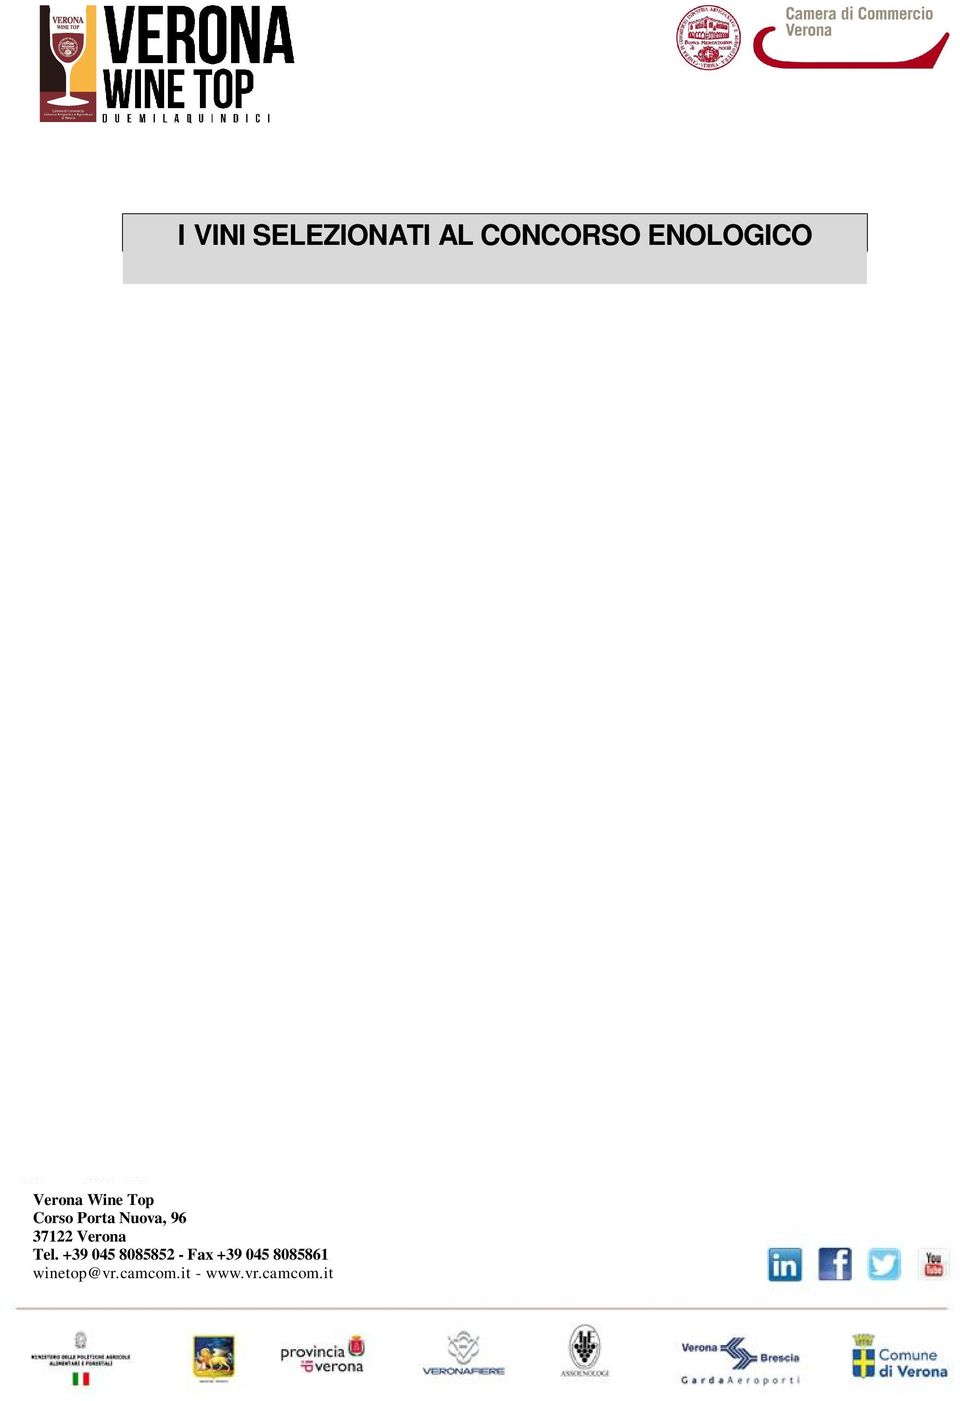 4387 AMARONE DELLA VALPOLICELLA DOC "PLENUM" 2008 VILLA CANESTRARI DI FRANCHI ADRIANA & C. SNC - COLOGNOLA AI COLLI (VR) Presentato alle Commissioni con il n.